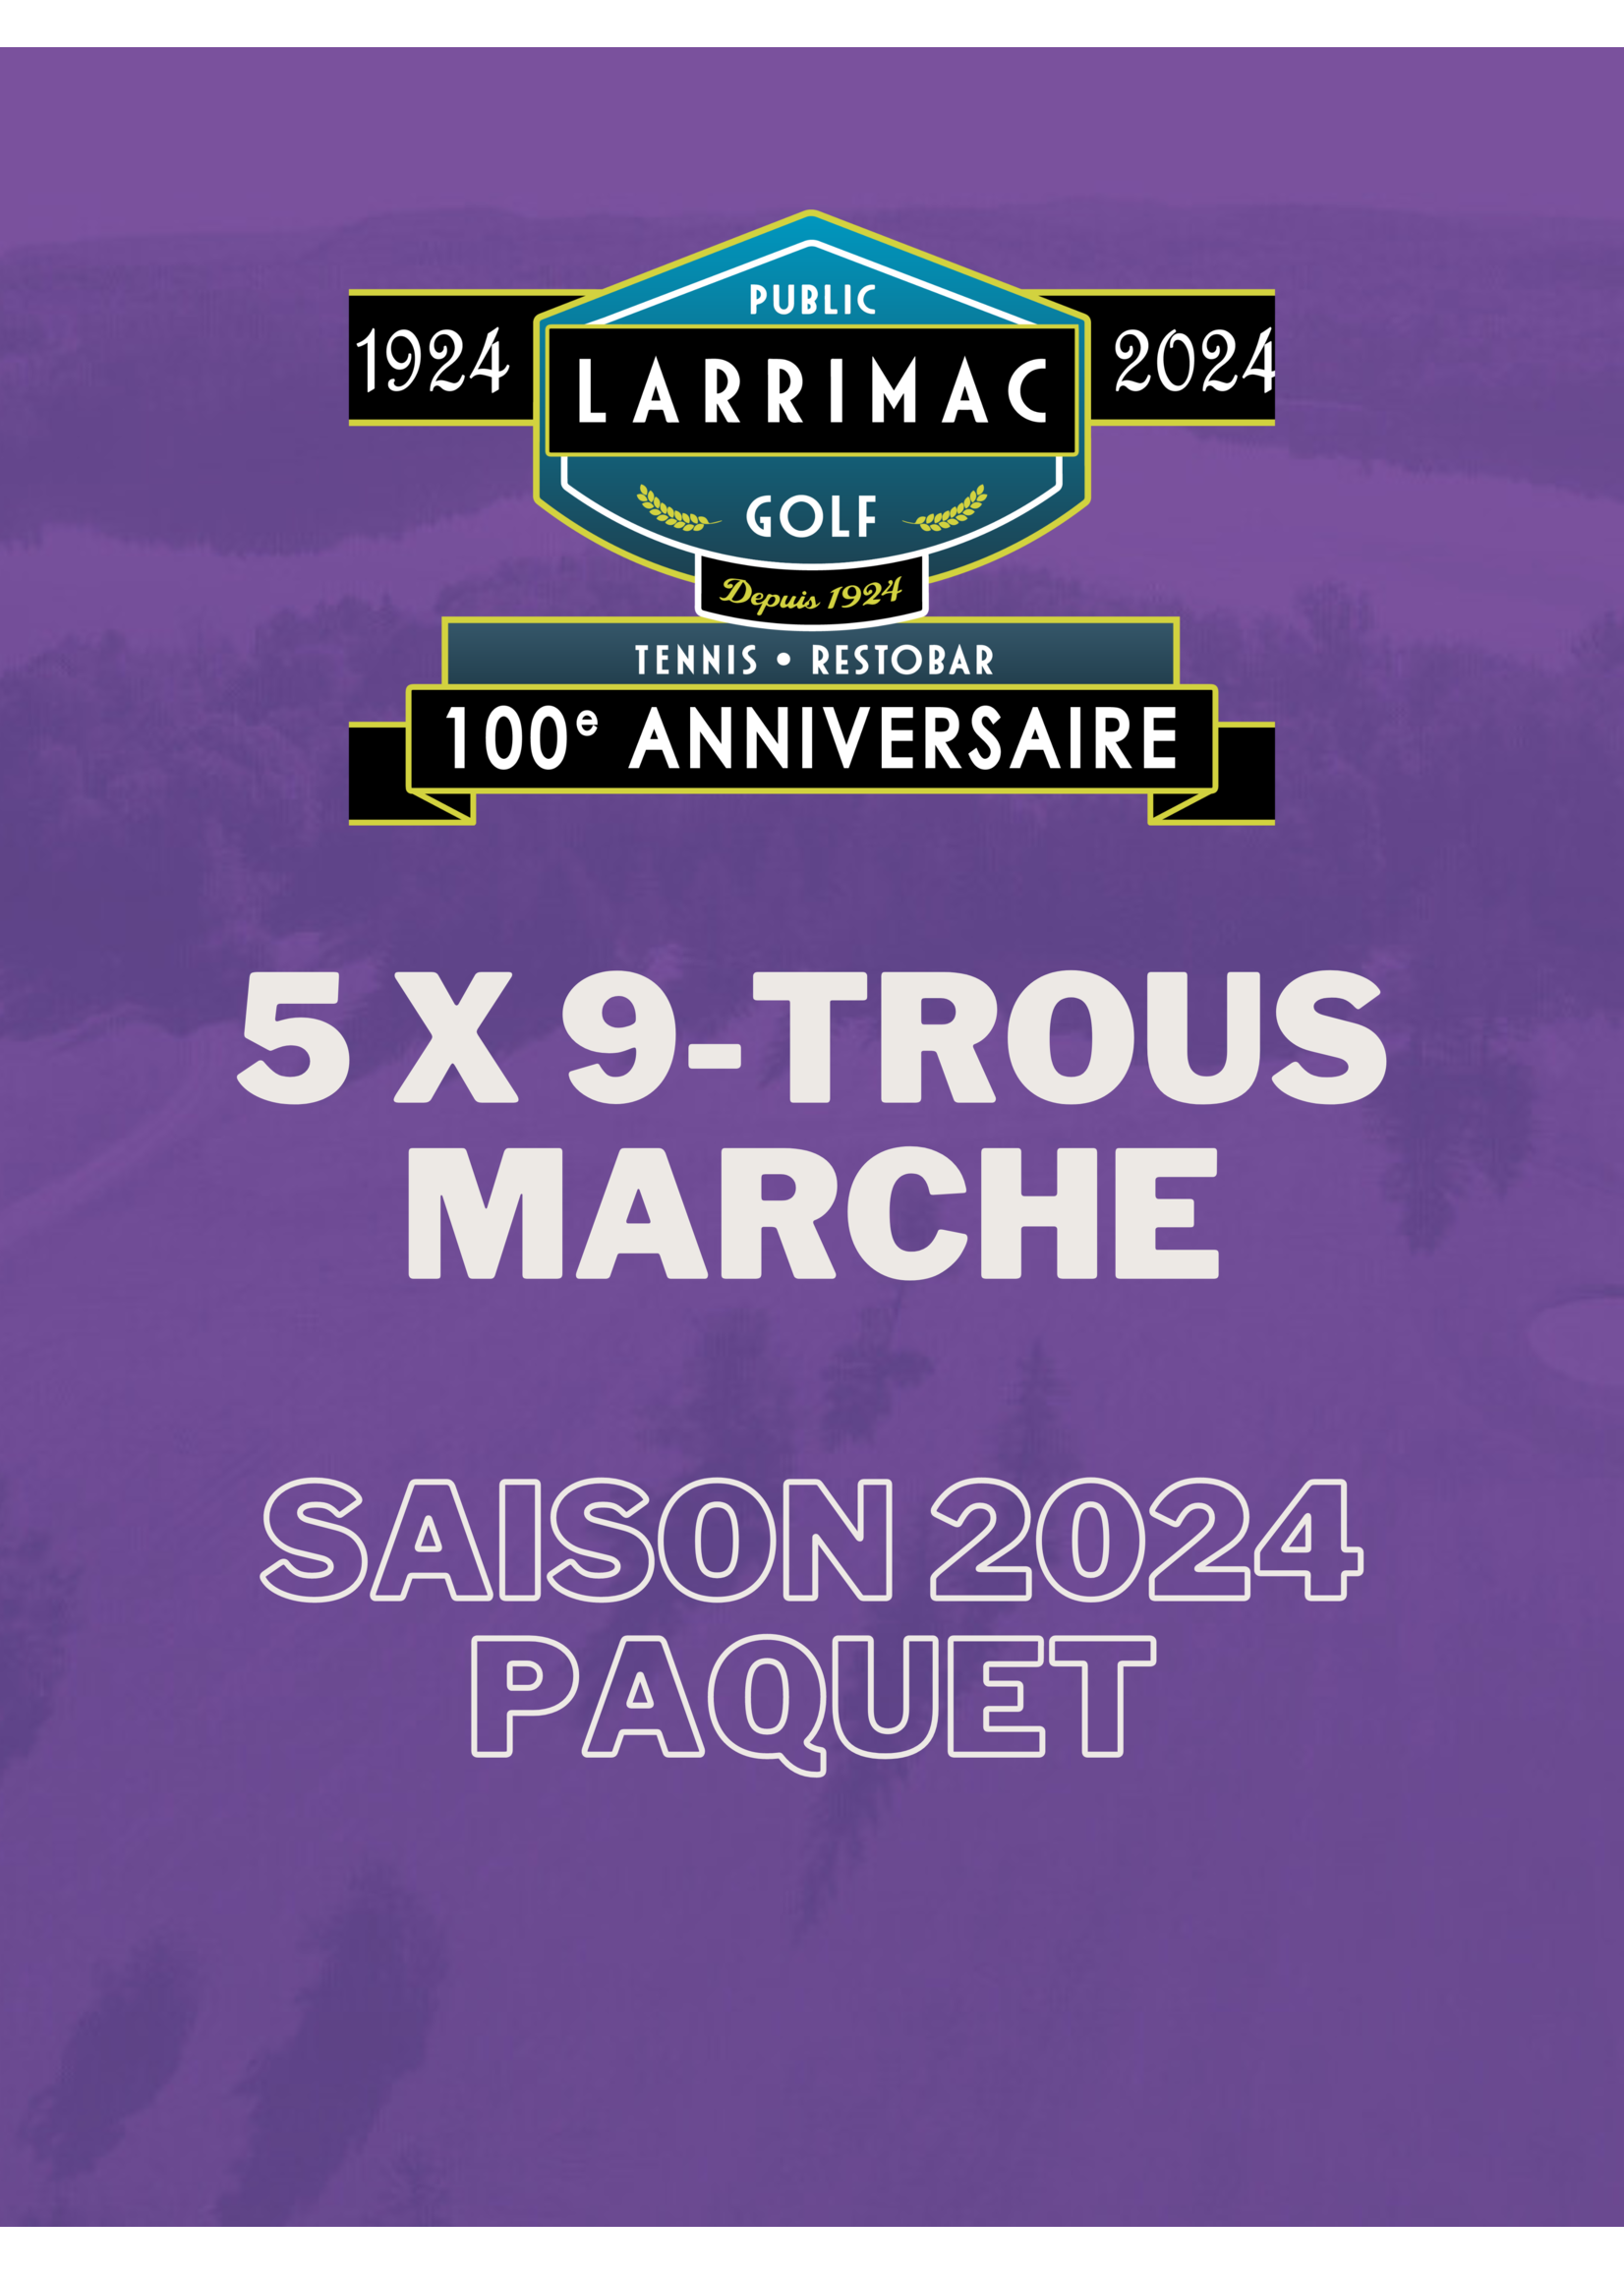 2024 packages 5x 9 Trous Marche Paquet (Saison 2024 10% de réduction !)